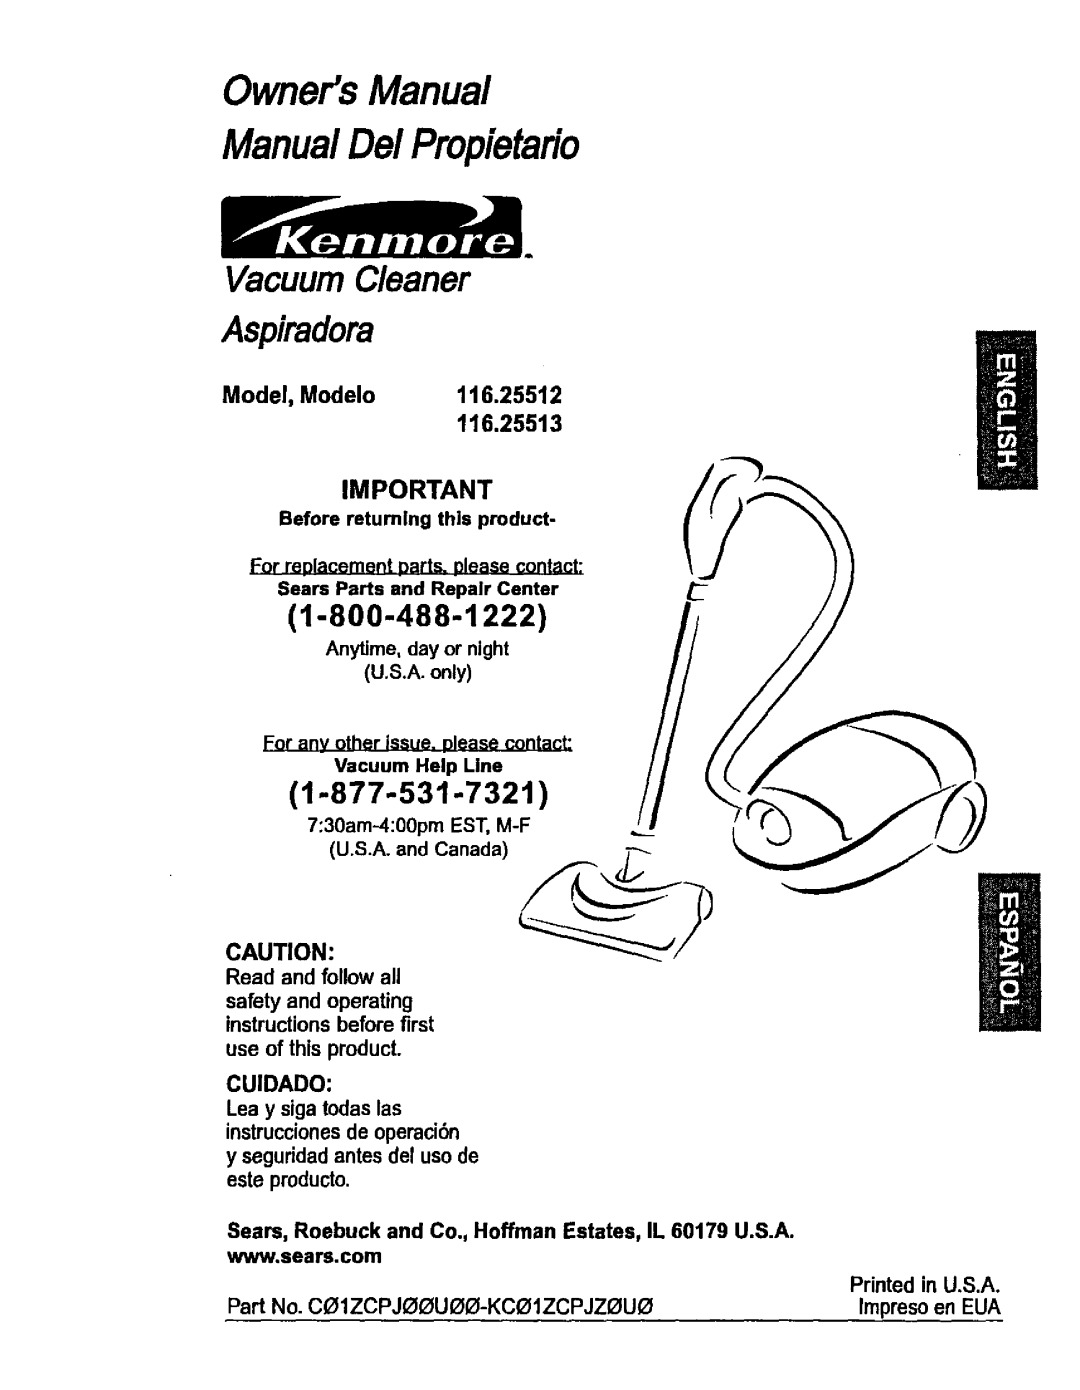 Kenmore 116.25513, 116.25512 owner manual 1-800-488-1222, 1-877-531-732t, Model, Modelo, OwnersManual ManualDe/Propietafio 